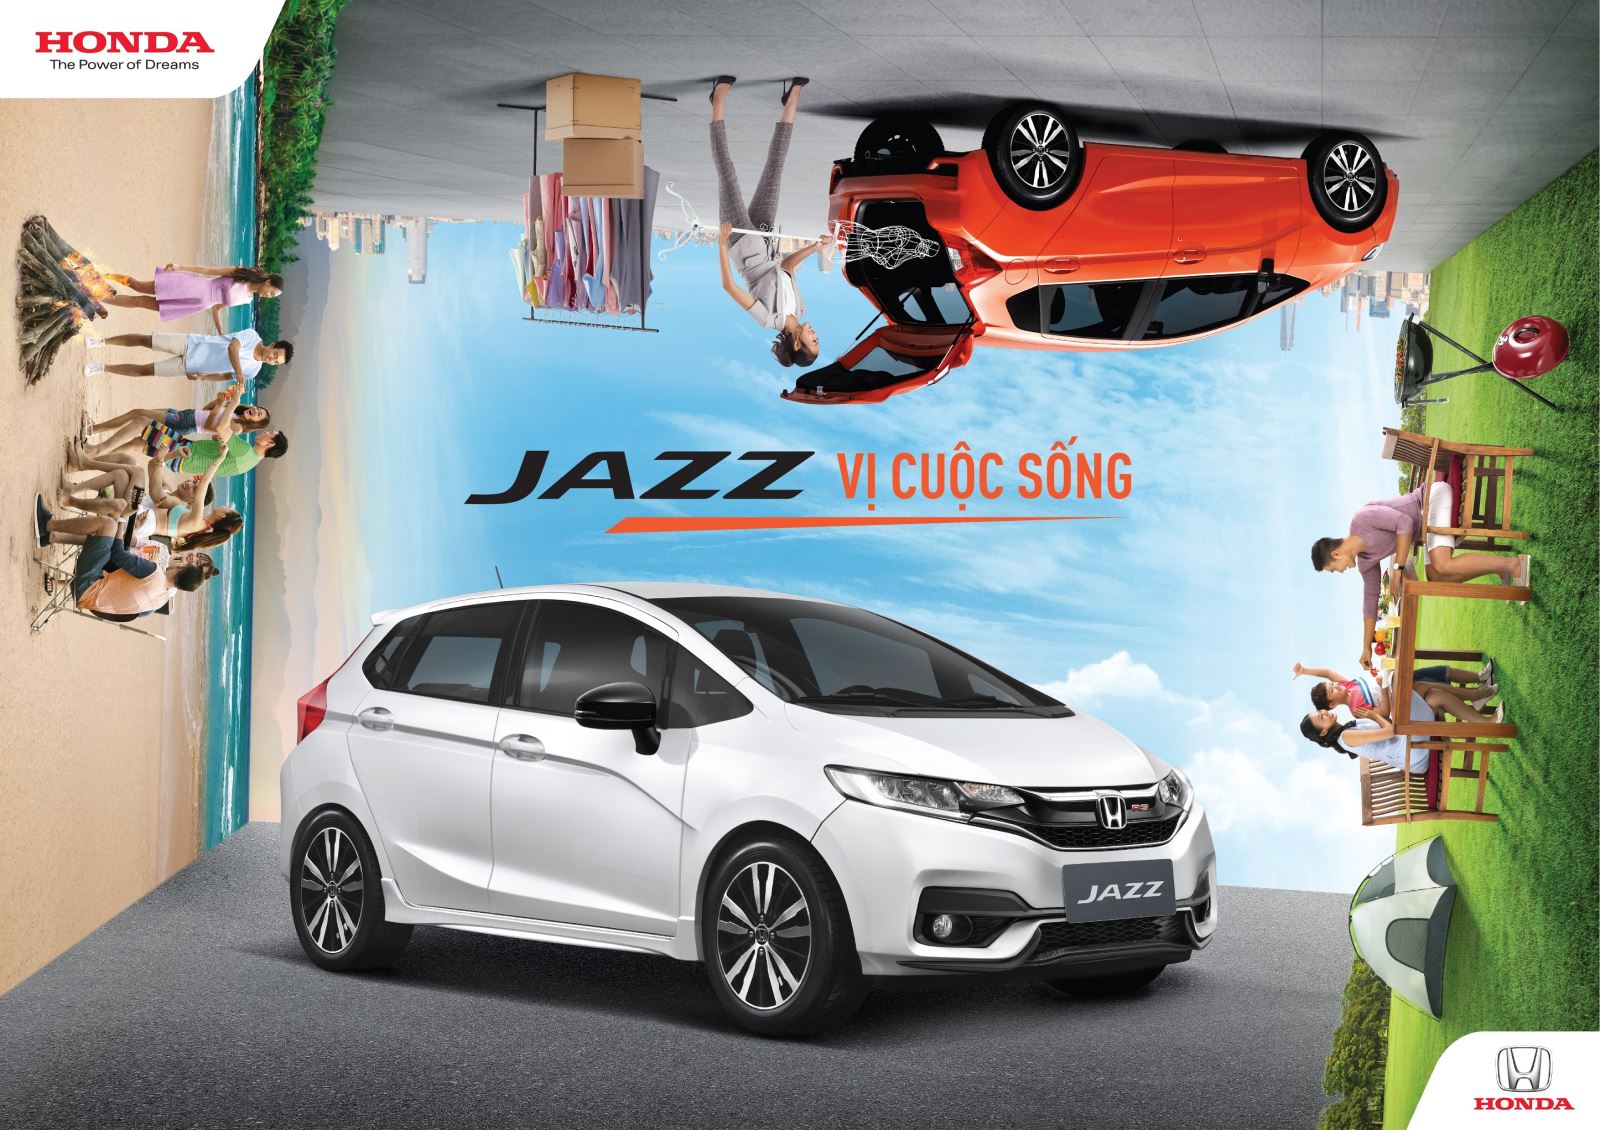 Honda Việt Nam giới thiệu mẫu xe Honda Jazz hoàn toàn mới – Jazz vị cuộc sống!